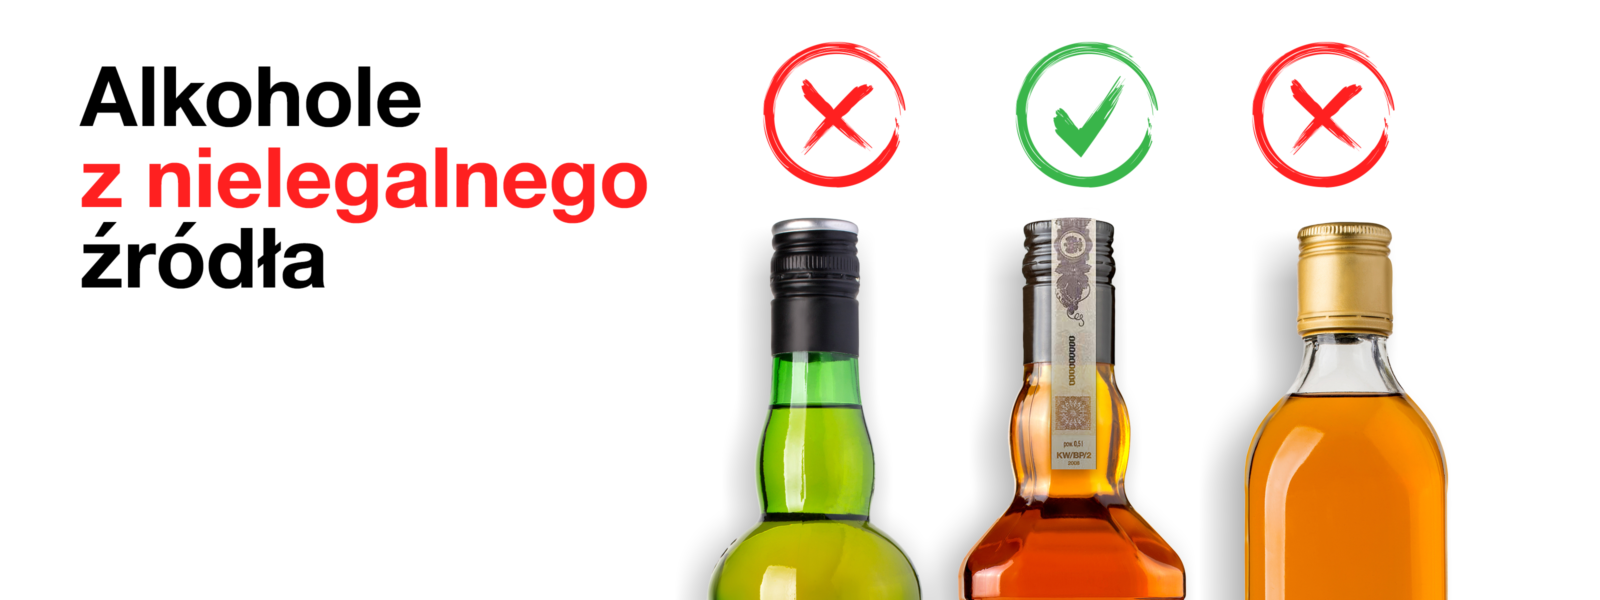 Dlaczego nie warto kupować alkoholu z nielegalnego źródła?